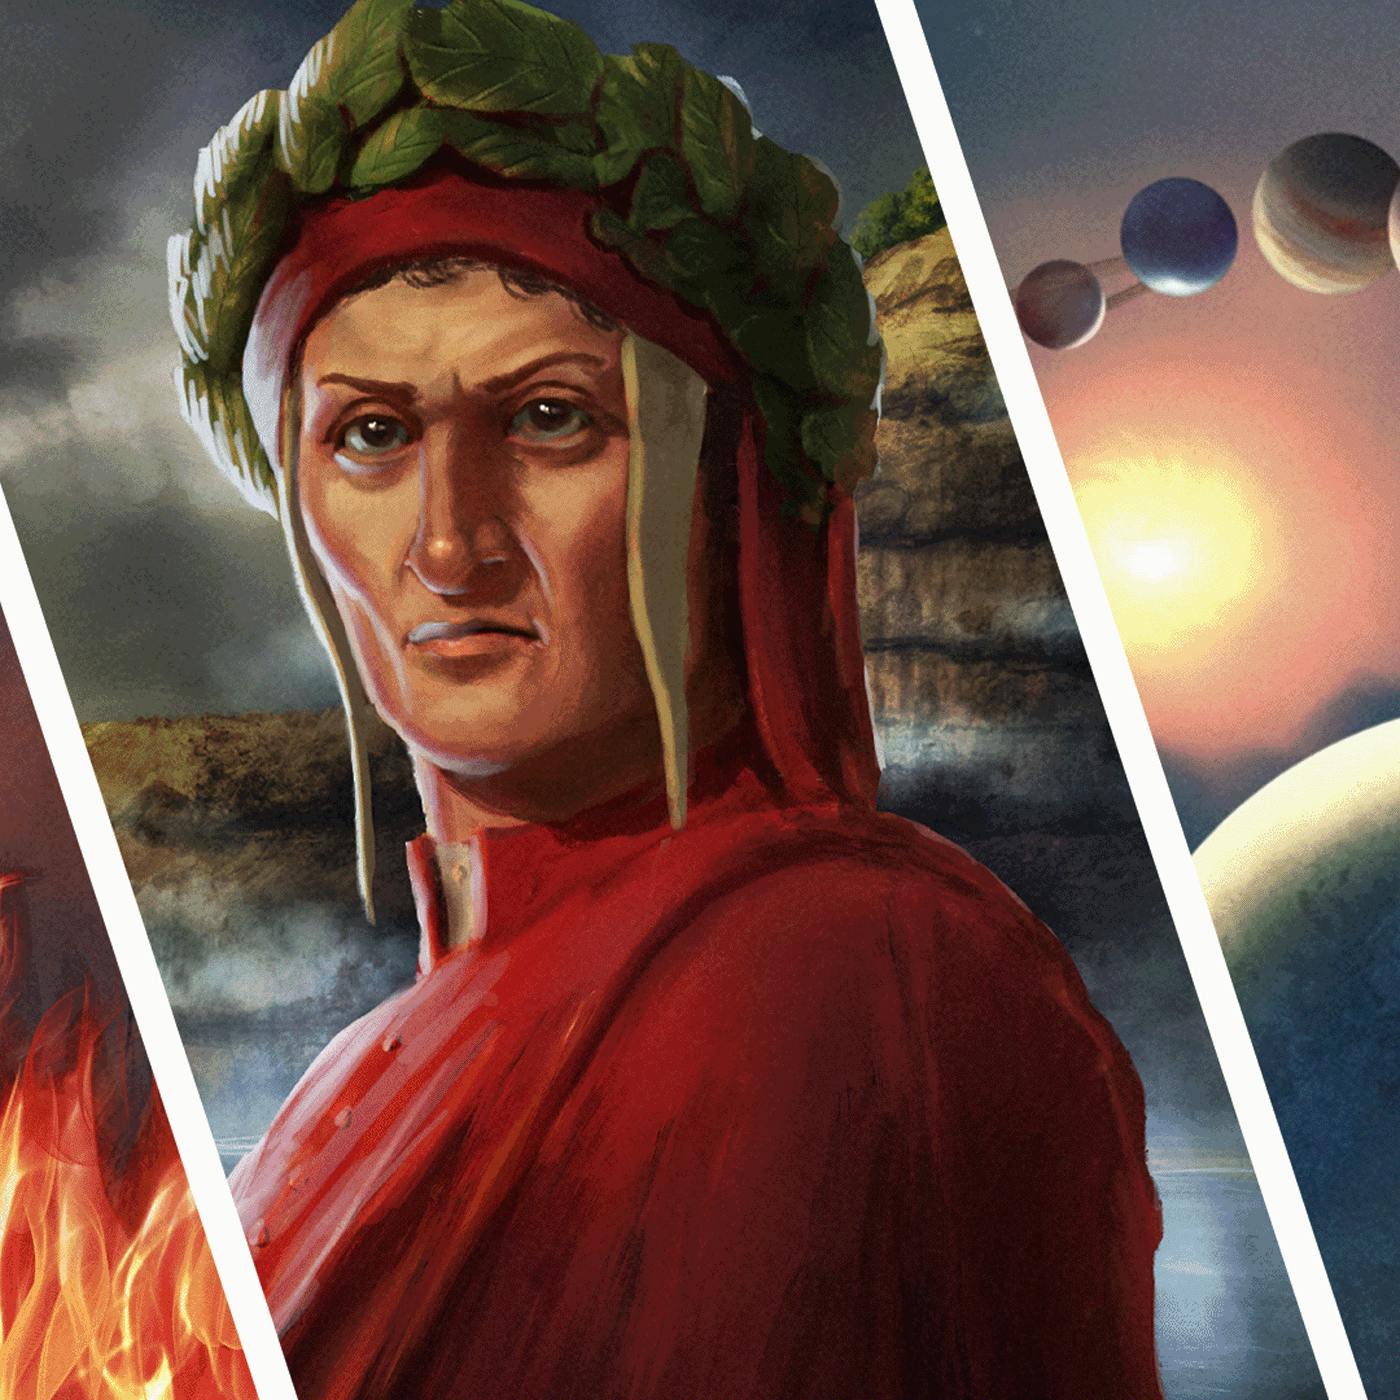 Episode 55: Dante's Inferno, Purgatorio & Paradiso - A Complete Summary of The Divine Comedy